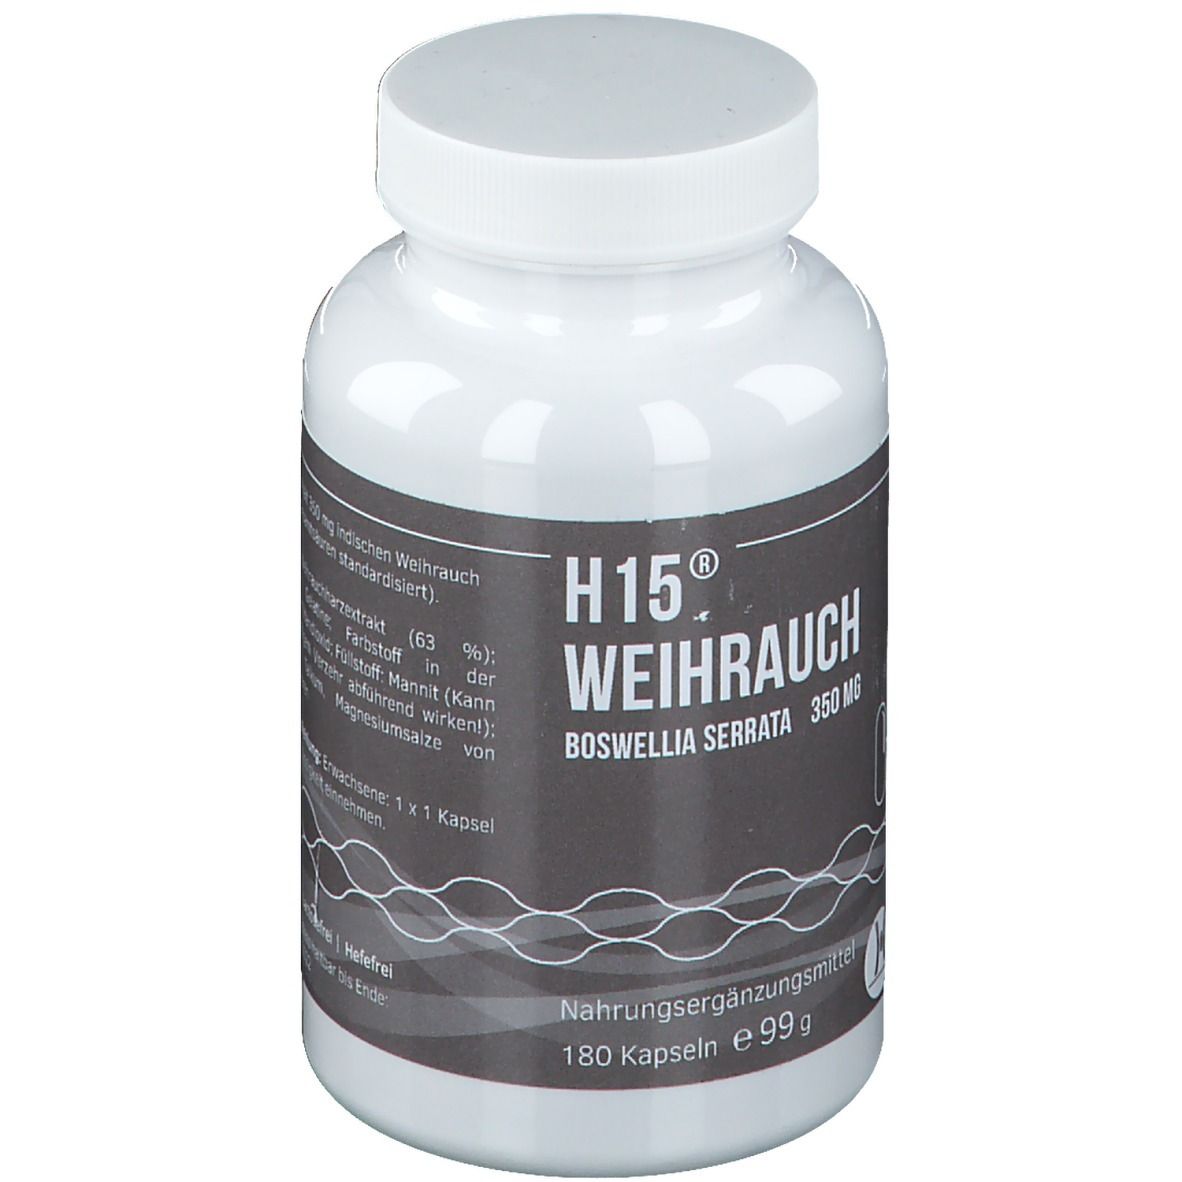 H15® Weihrauchkapseln 350 mg NEM Kapseln